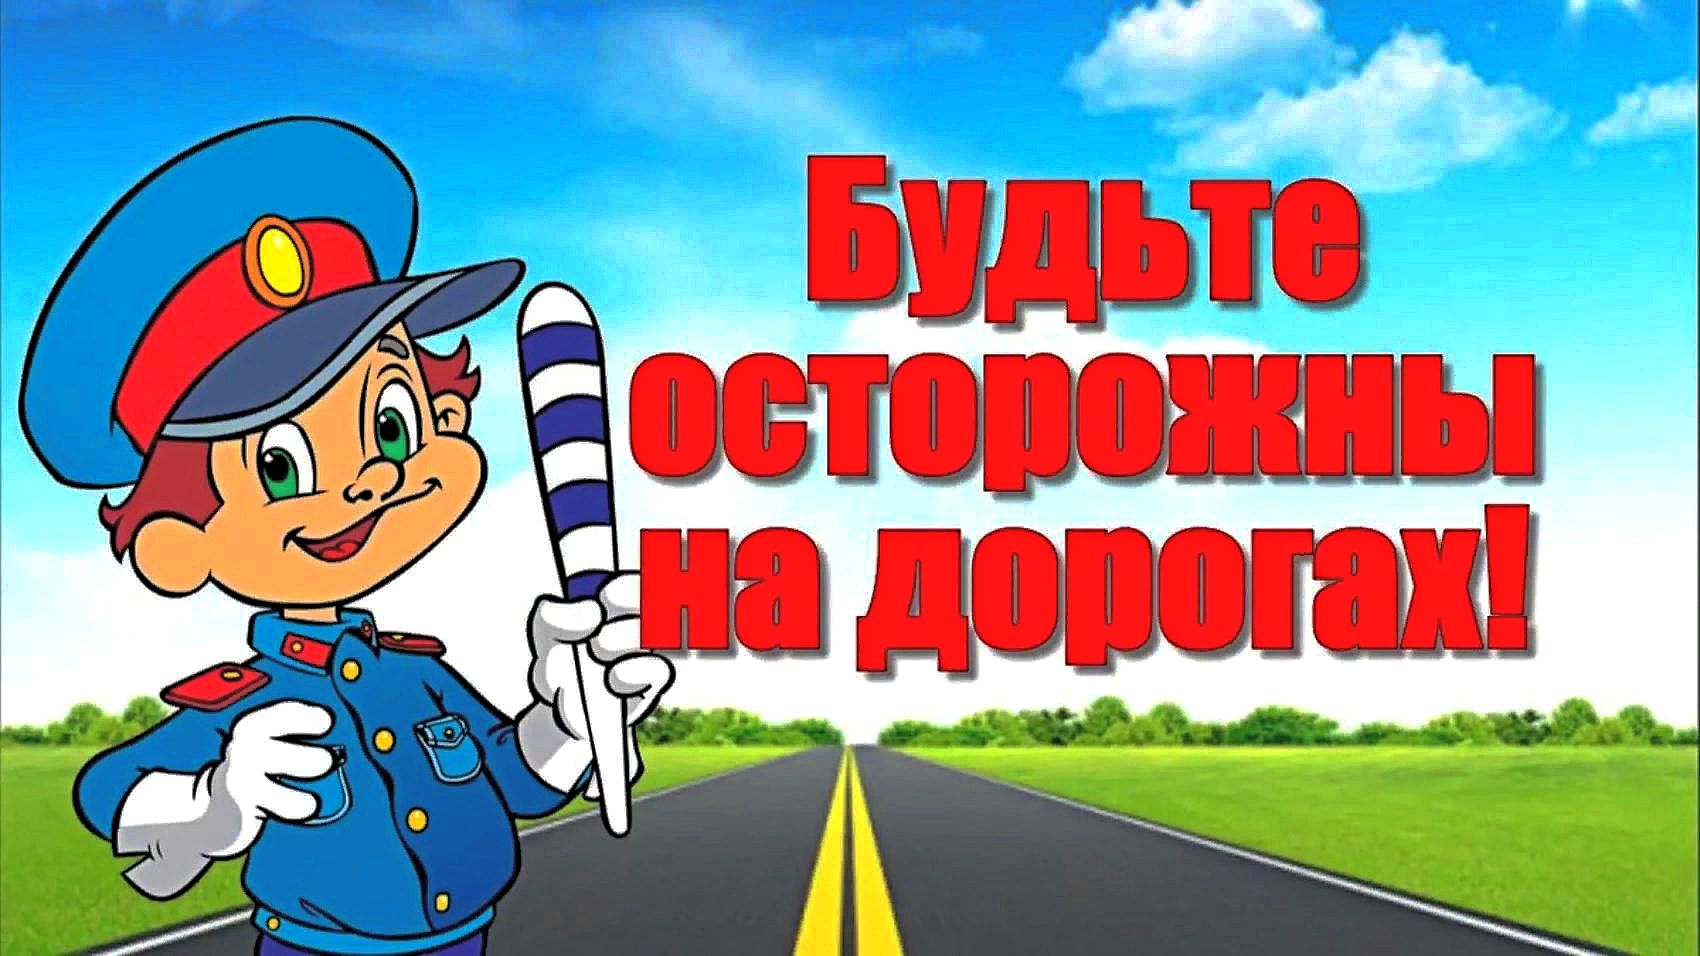 Всероссийская неделя безопасности дорожного движения.